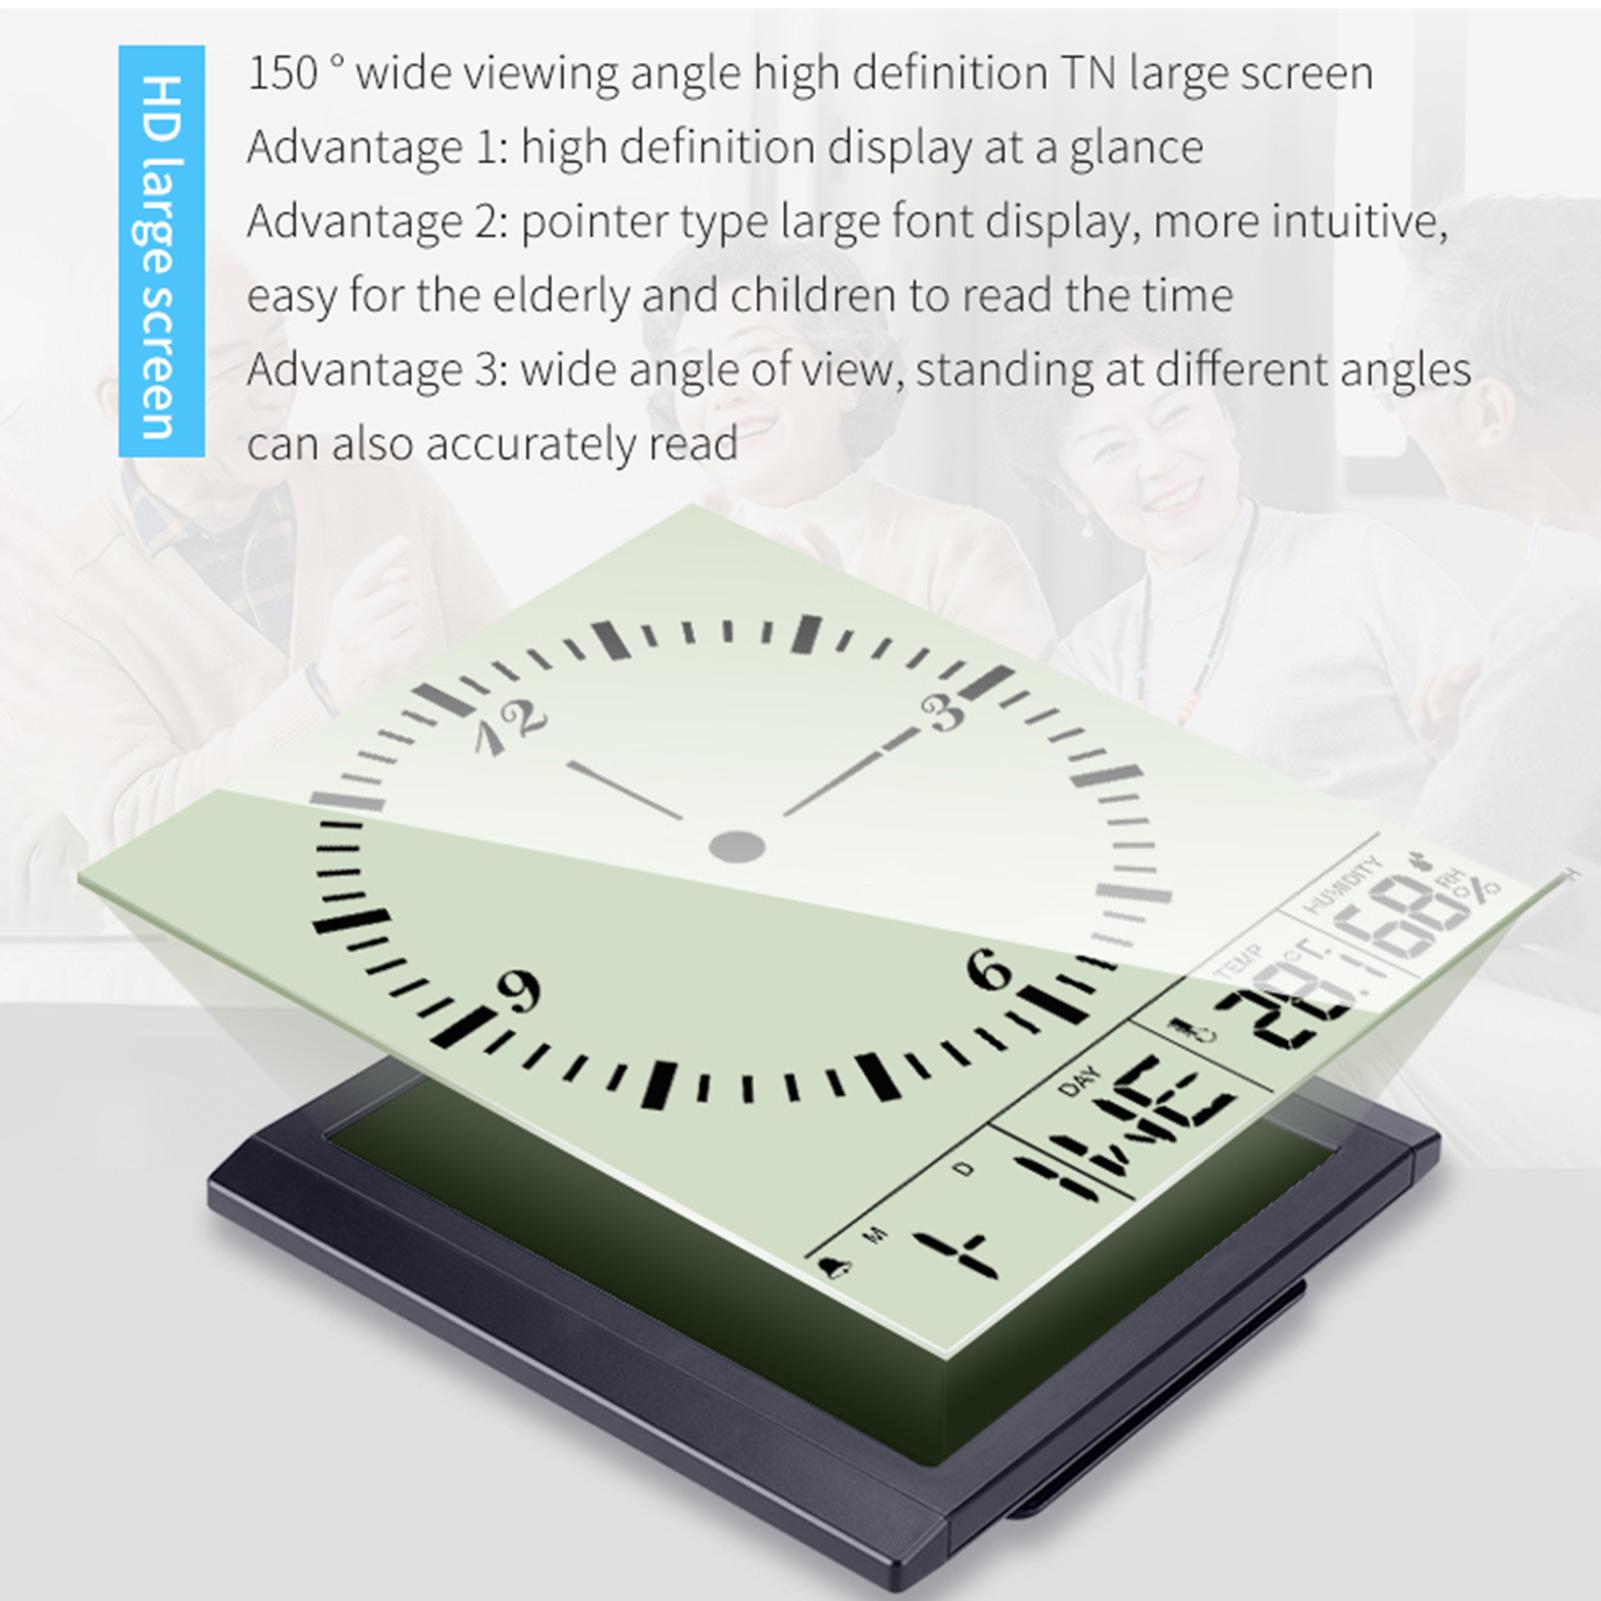 Đồng hồ hình vuông hiện đại và đơn giản, màn hình lớn, độ nét cao, góc nhìn rộng, 150 độ. Hiển thị thời gian, lịch, tuần, nhiệt độ và độ ẩm.